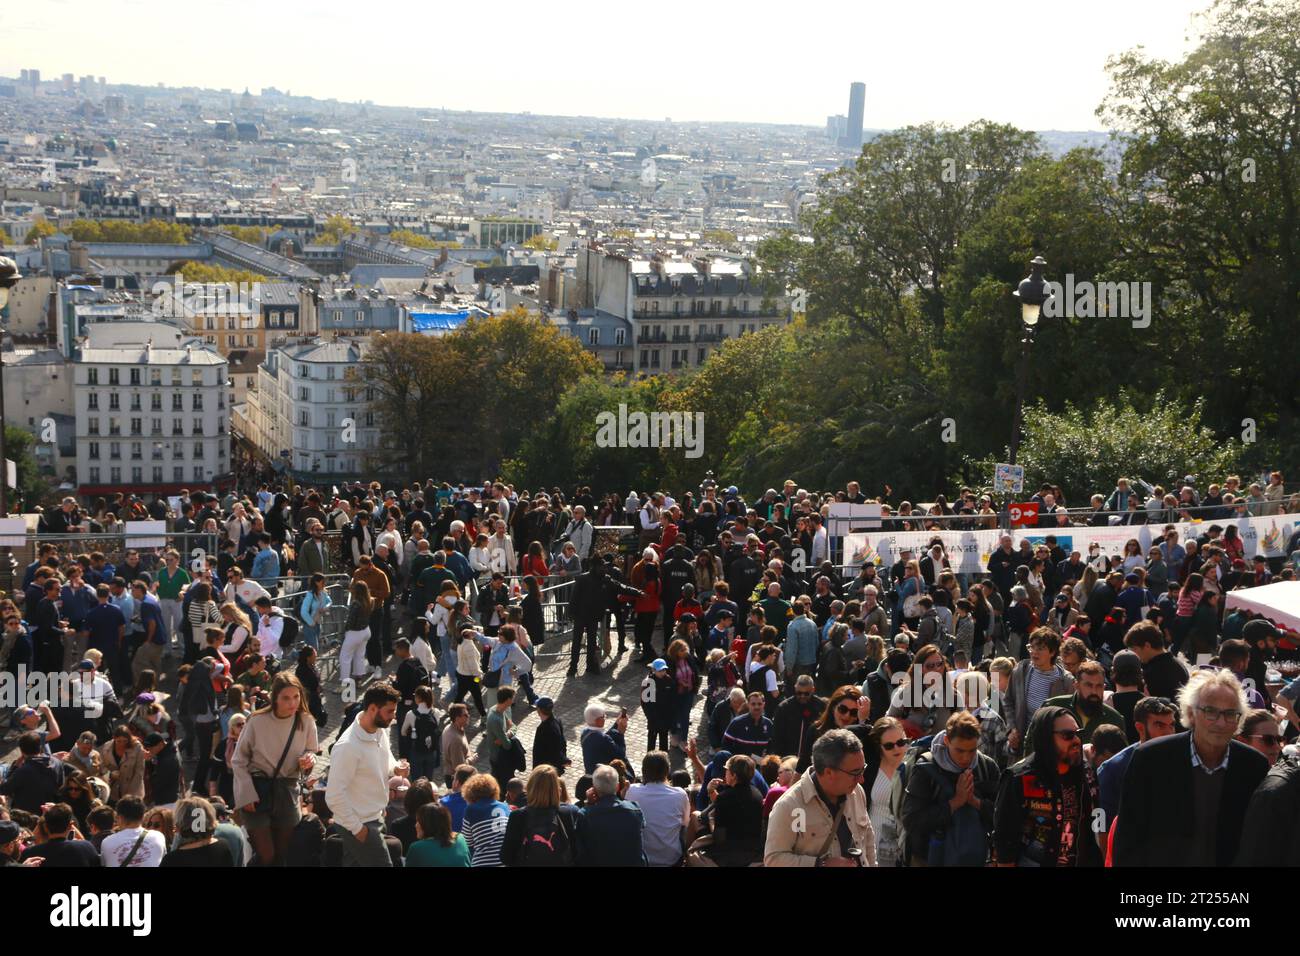 Una grande folla è riunita sotto la Cattedrale del Sacro cuore durante il Montmartre Wine Festival a Parigi, con gli edifici della città in lontananza Foto Stock